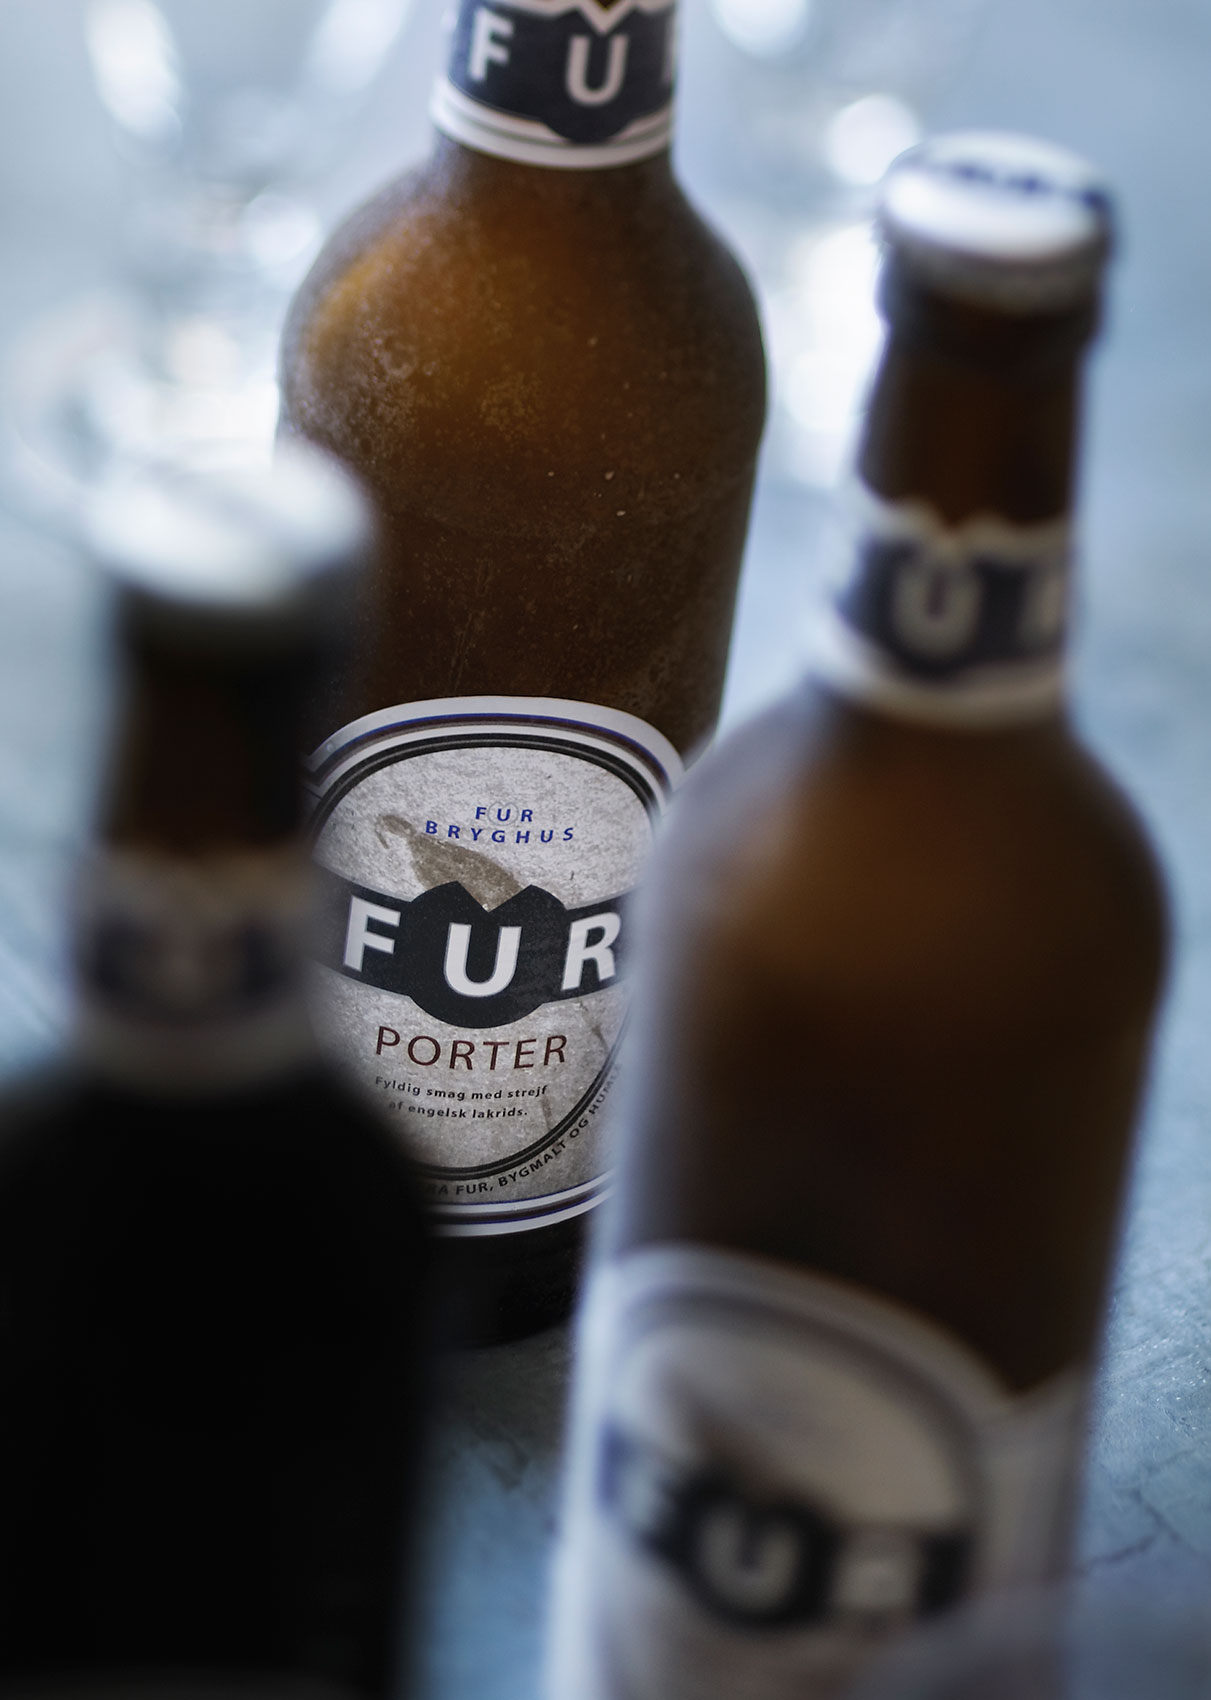 Fur Bryghus Porter Beer Bottles on Bench • Beverage & Liquid Photography